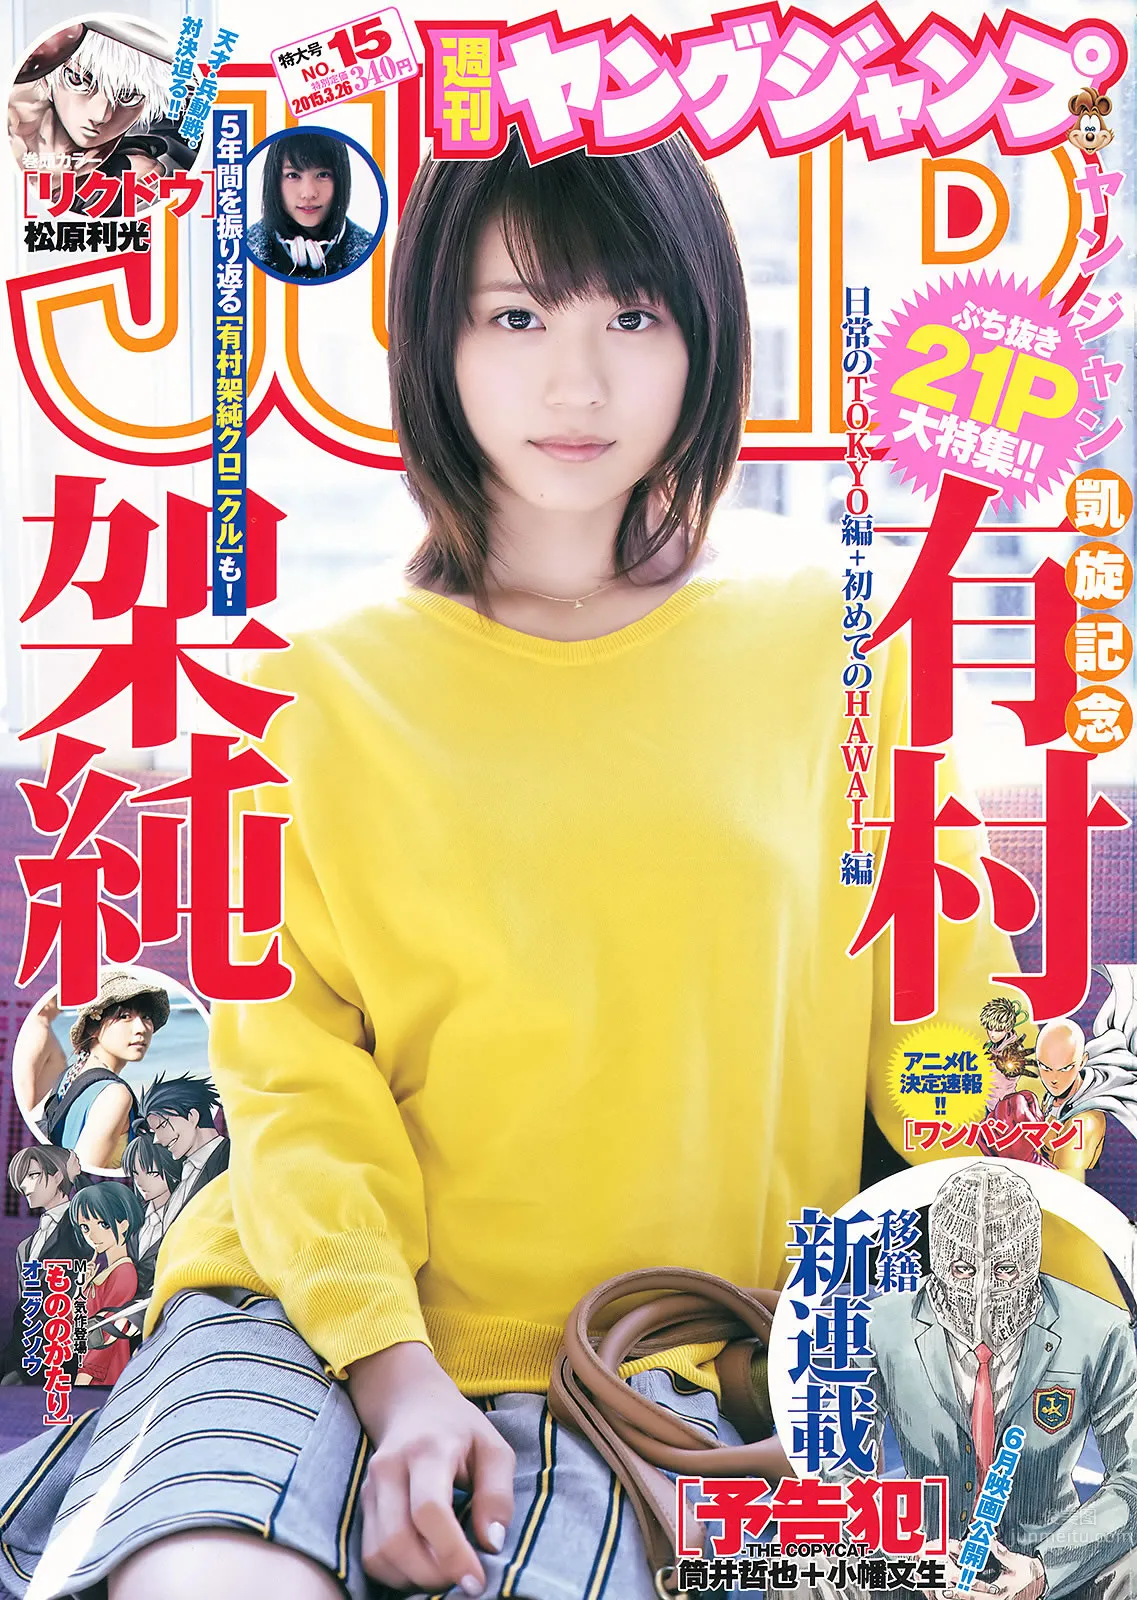 [Weekly Young Jump] 2015 No.14 15 西野七瀬 伊藤万理华 有村架纯_0